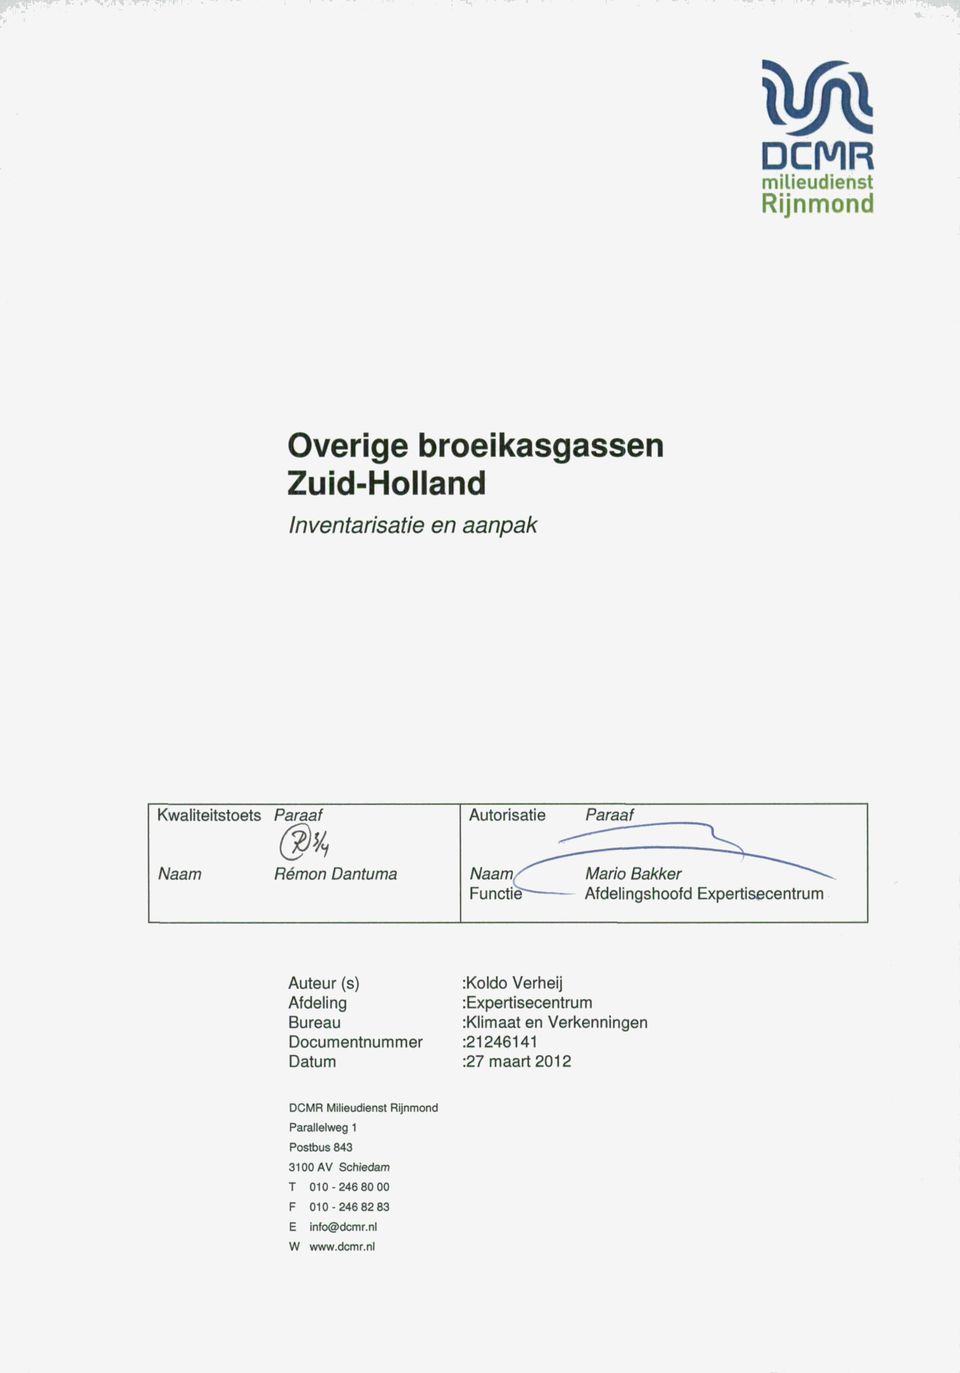 :Koldo Verheij Afdeling :Expertisecentrum Bureau :Klimaat en Verkenningen Documentnummer :21246141 Datum :27 maart 2012